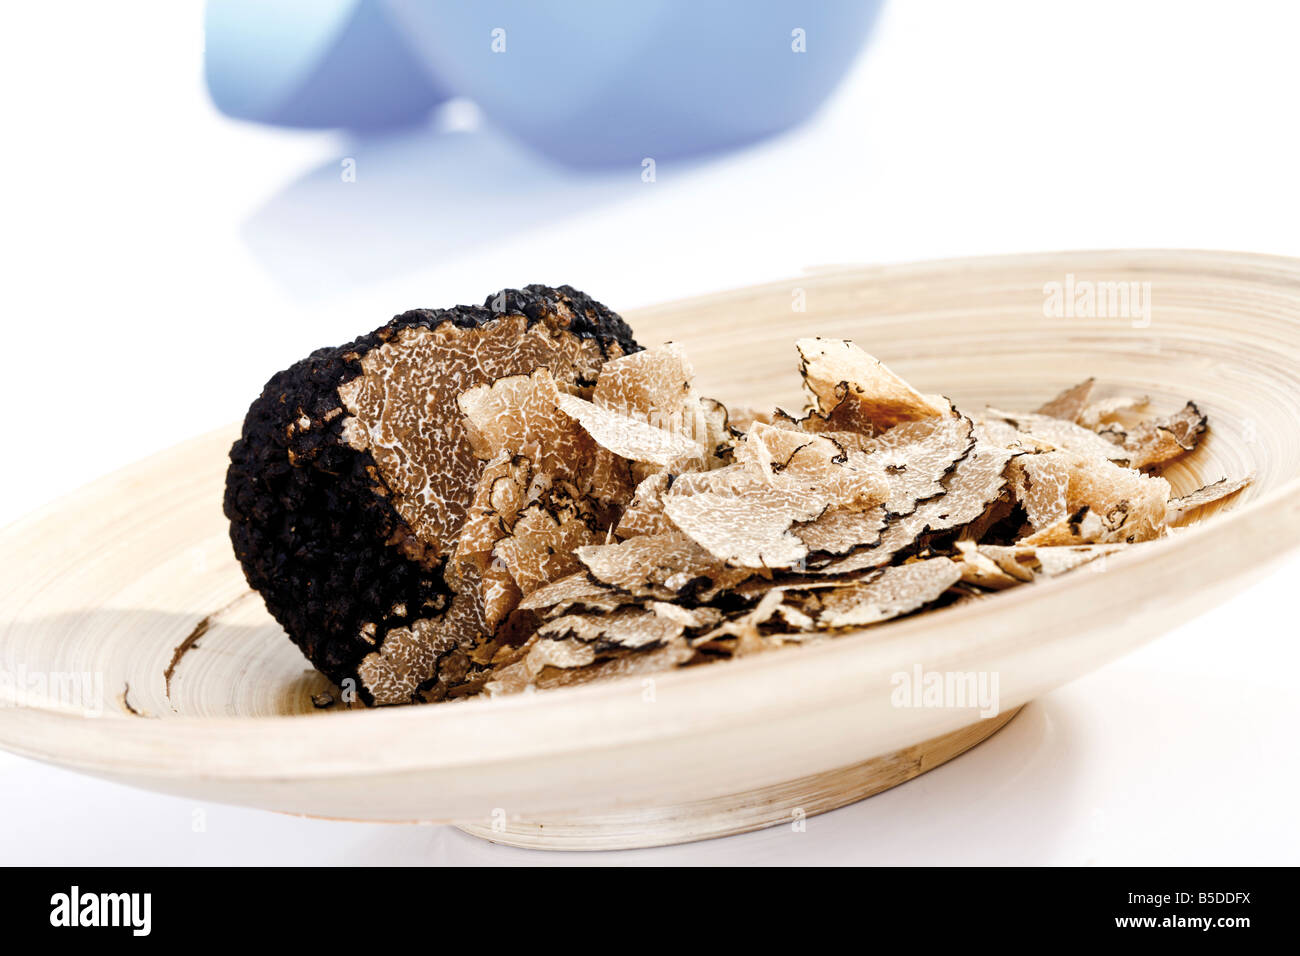 Tranches de truffe sur plaque de bois, close-up Banque D'Images